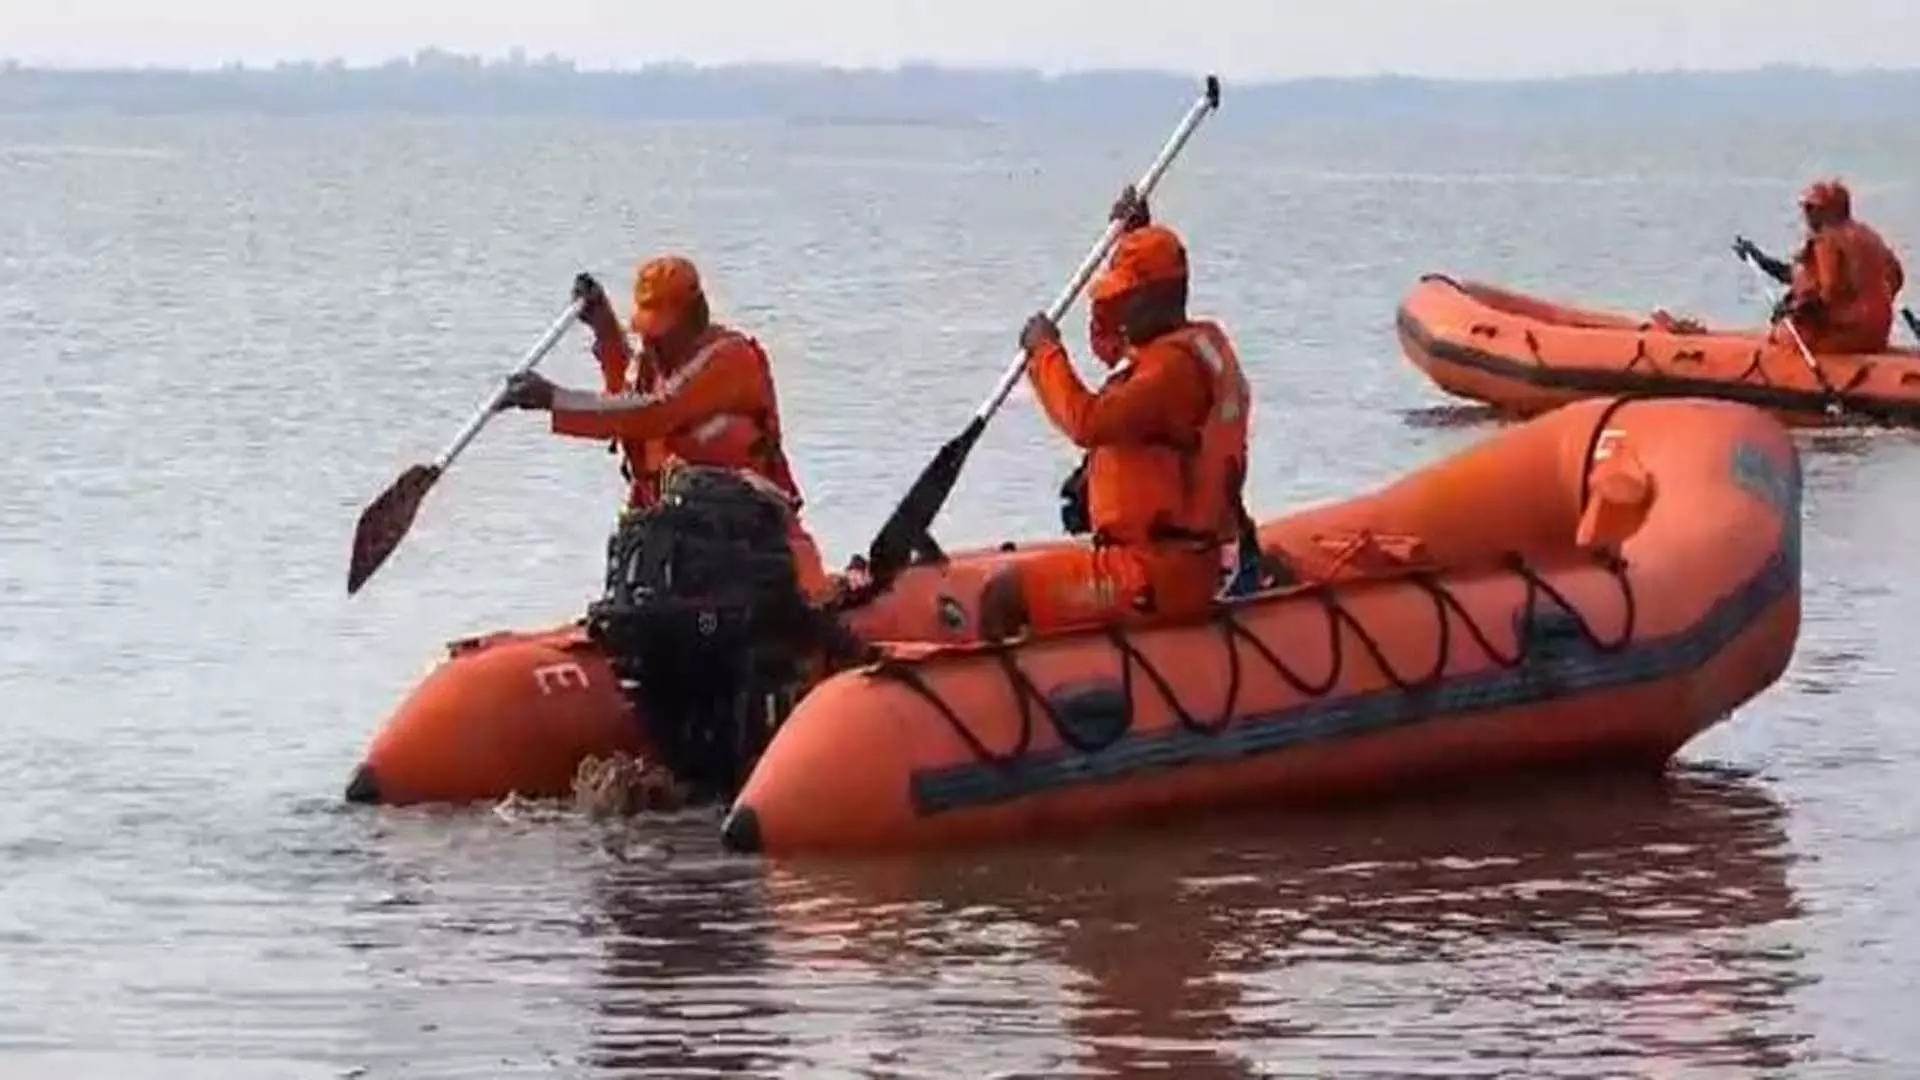 नाव पलटने से डूबे छह लोग, पांच के शव बाहर निकाले गए दूसरे पीड़ित की तलाश जारी